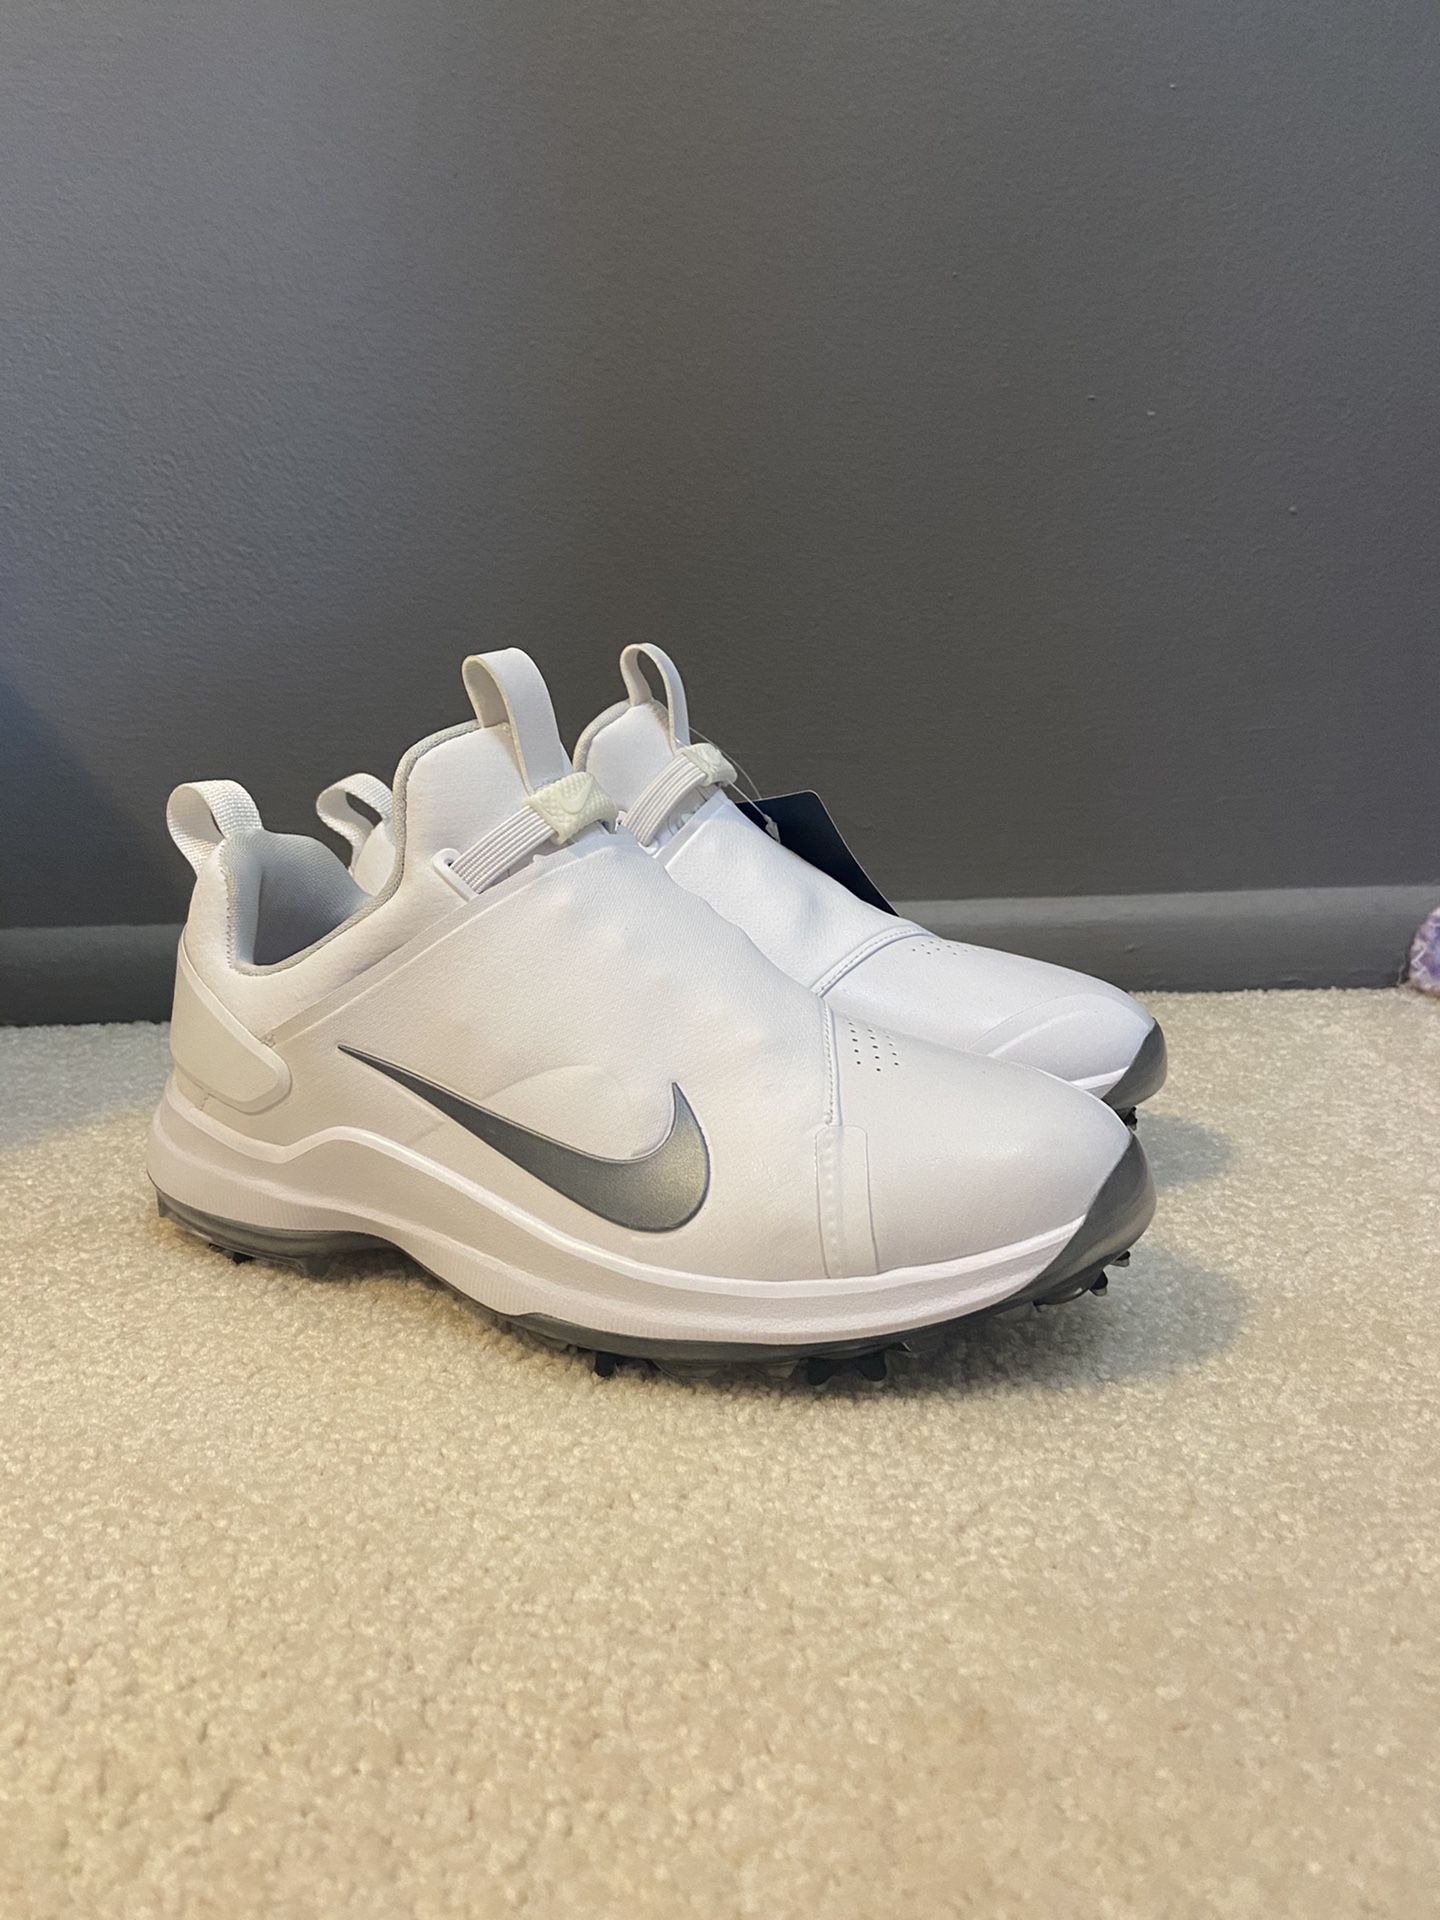 Nike Tour Premiere PGA Mens Golf Shoes White Metallic Size 7 NEW AO2241-101